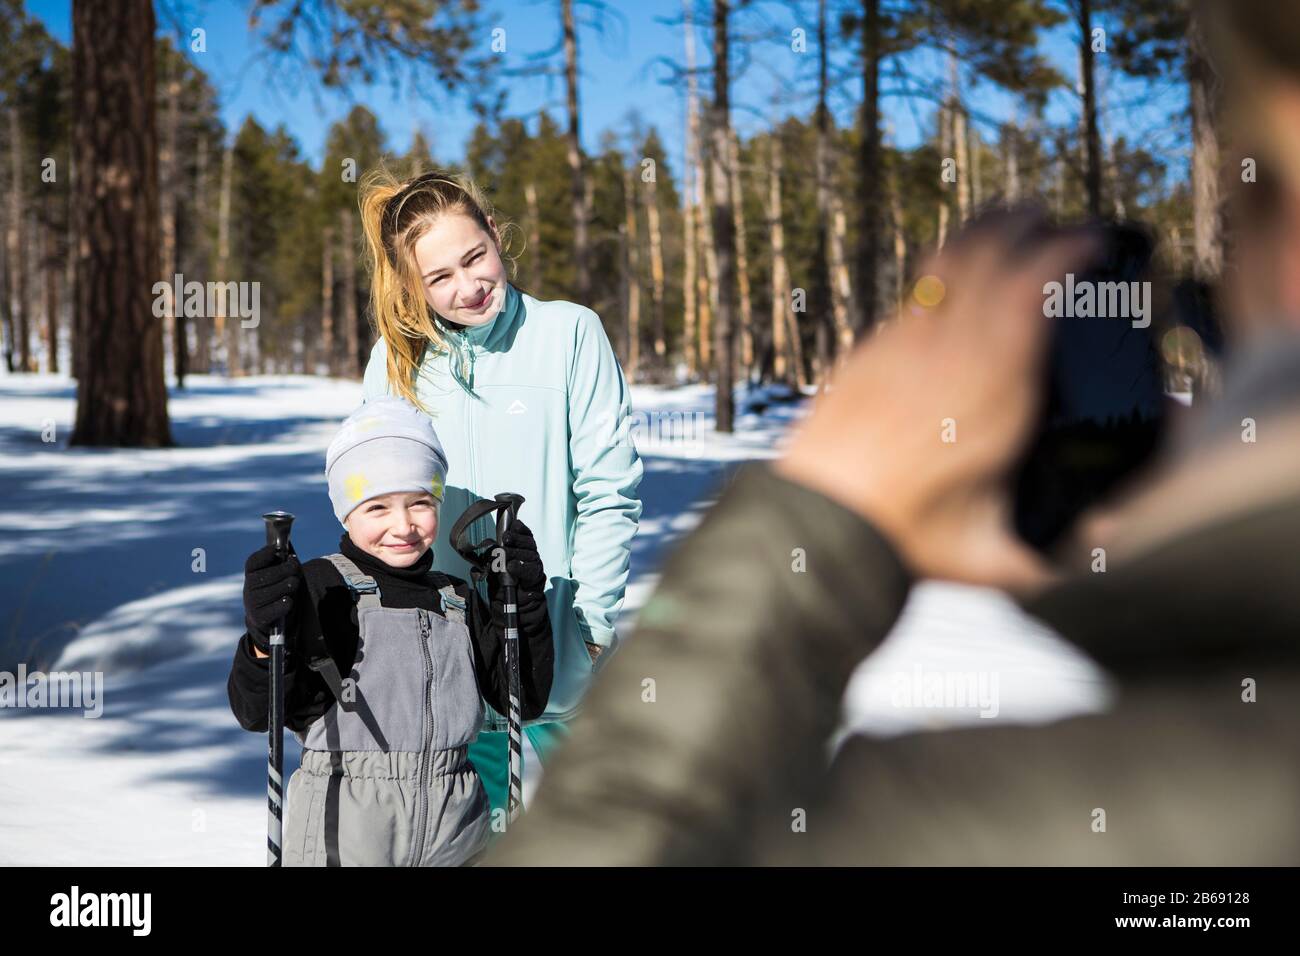 Mutter, die sich ein Bild von ihren beiden Kindern macht, einem Jungen und Mädchen im Teenager-Alter in verschneiten Waldlandschaften. Stockfoto